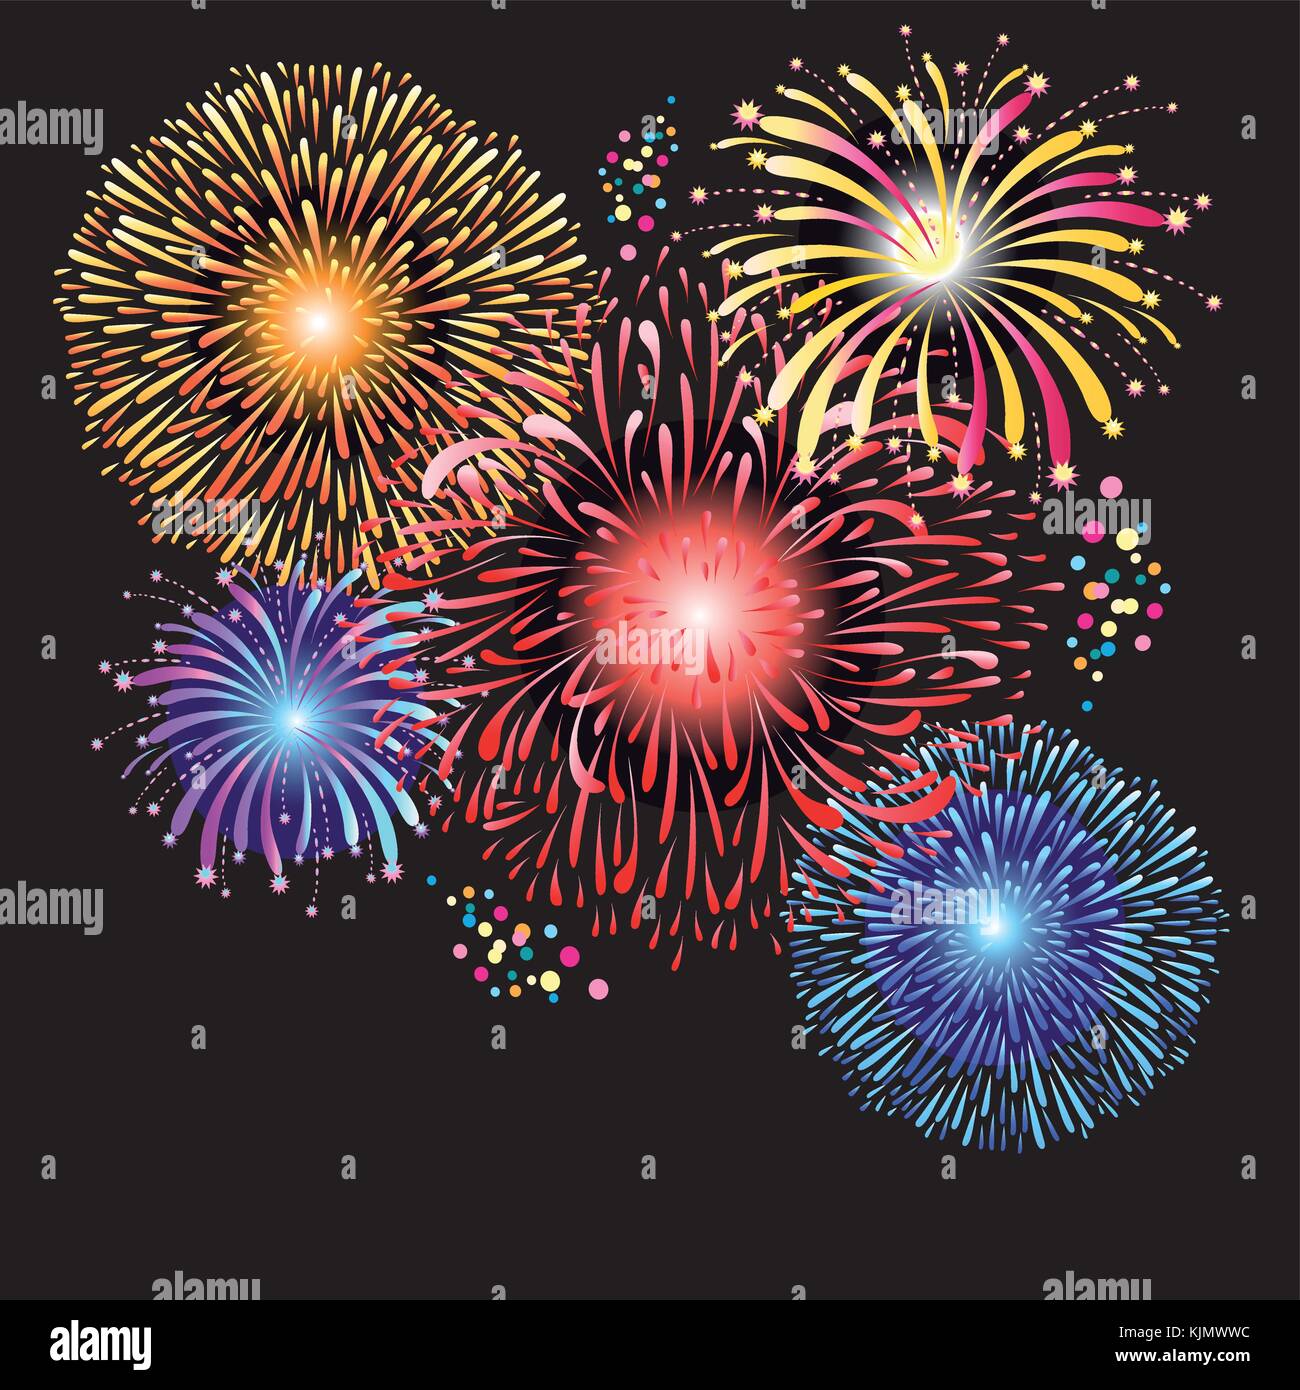 Wunderschöne Grafiken von bunten Feuerwerk auf einem dunklen Hintergrund Stock Vektor